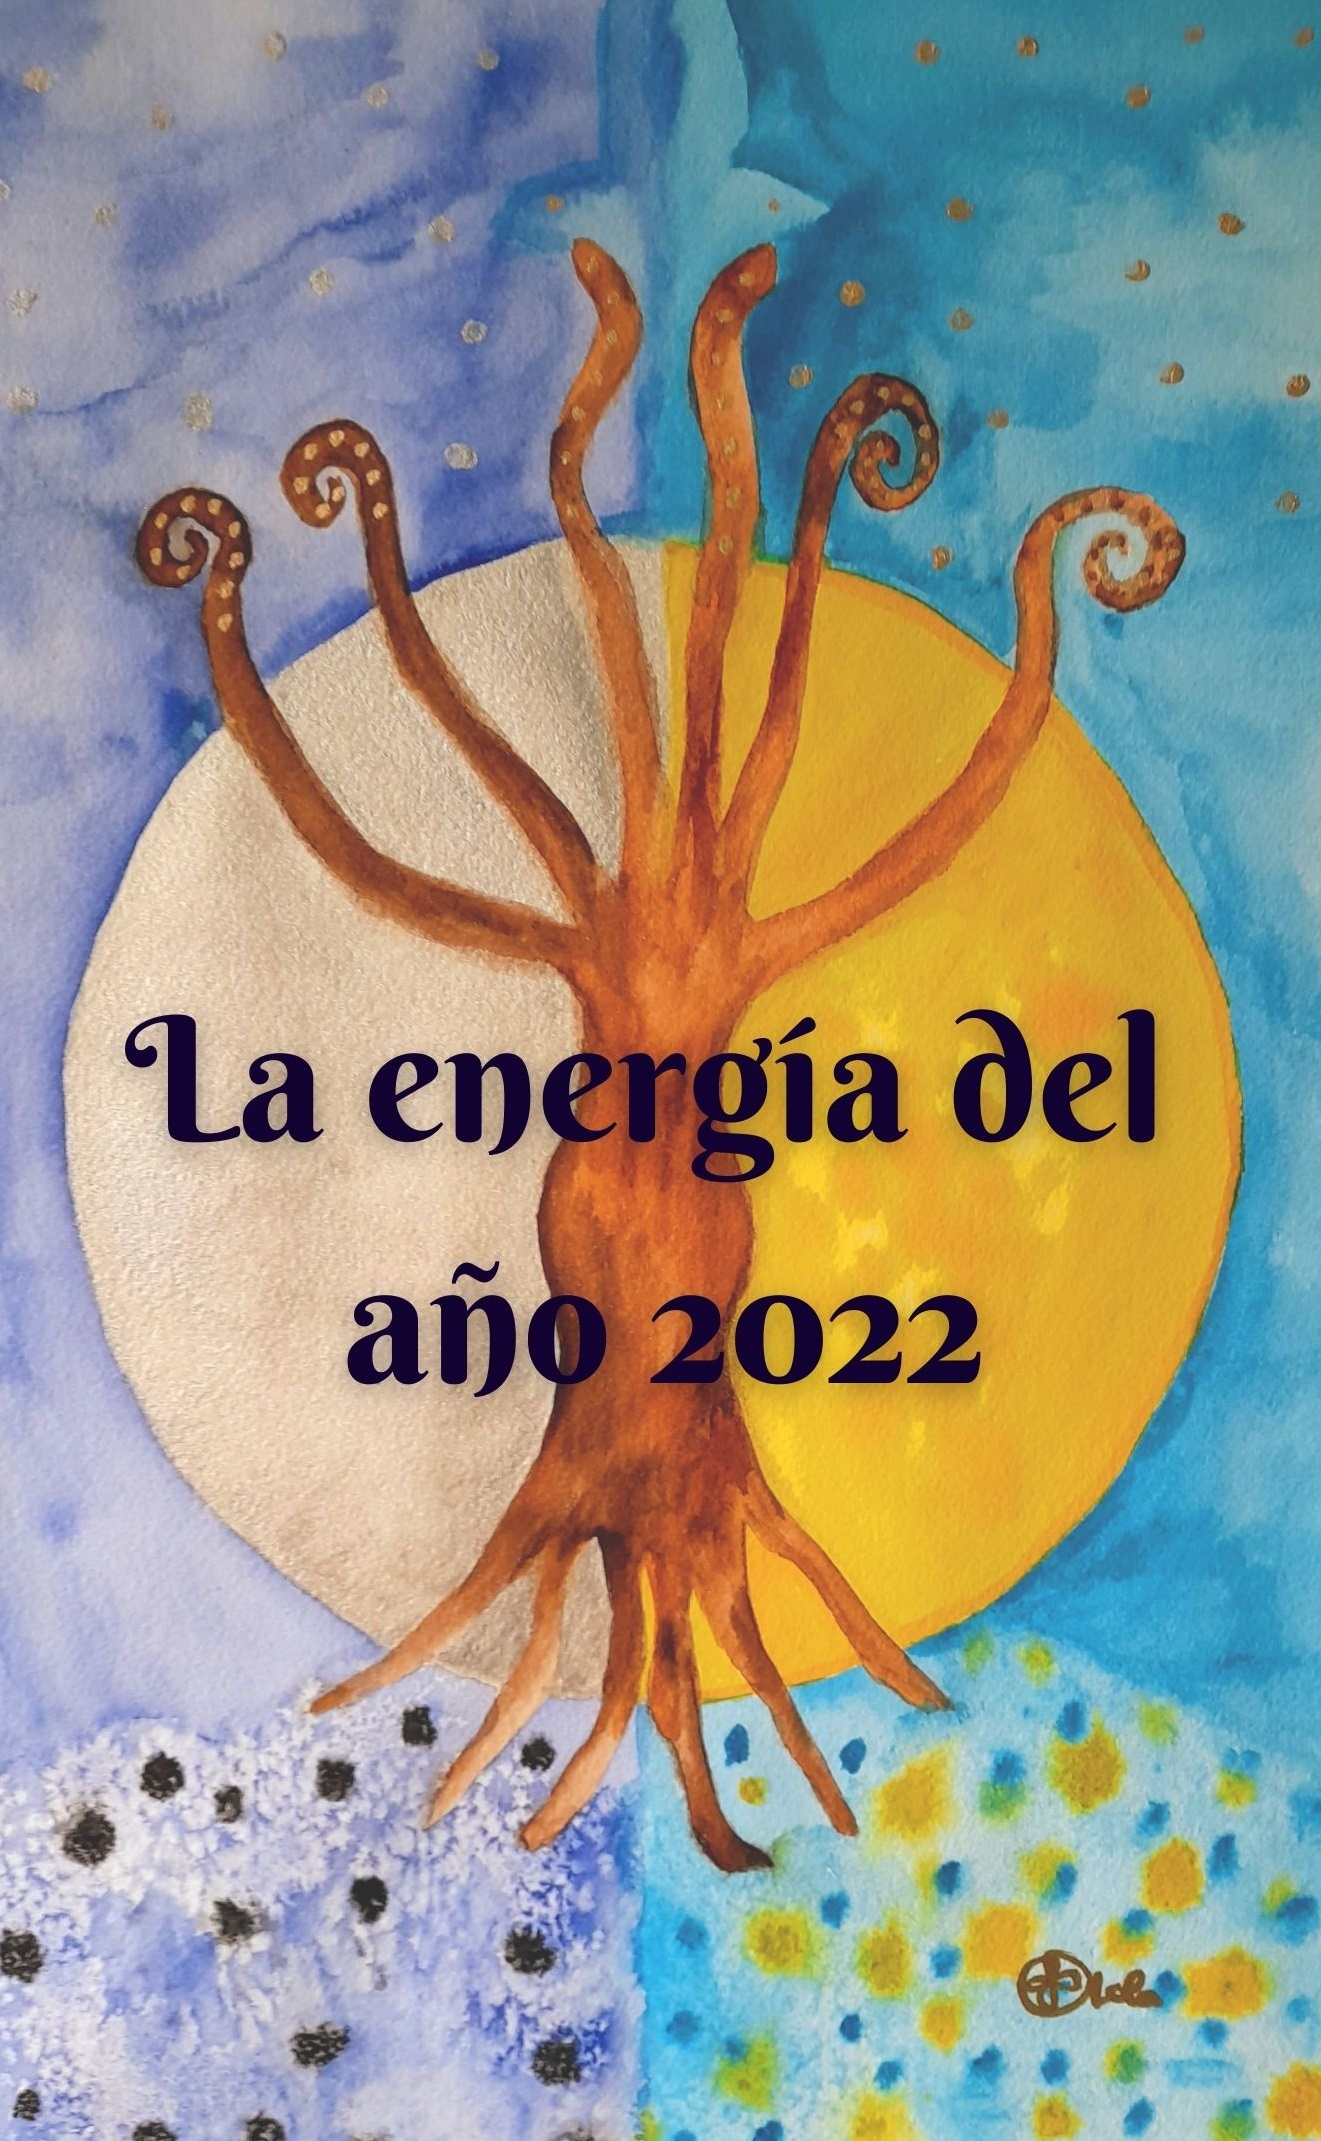 La energía del año 2022